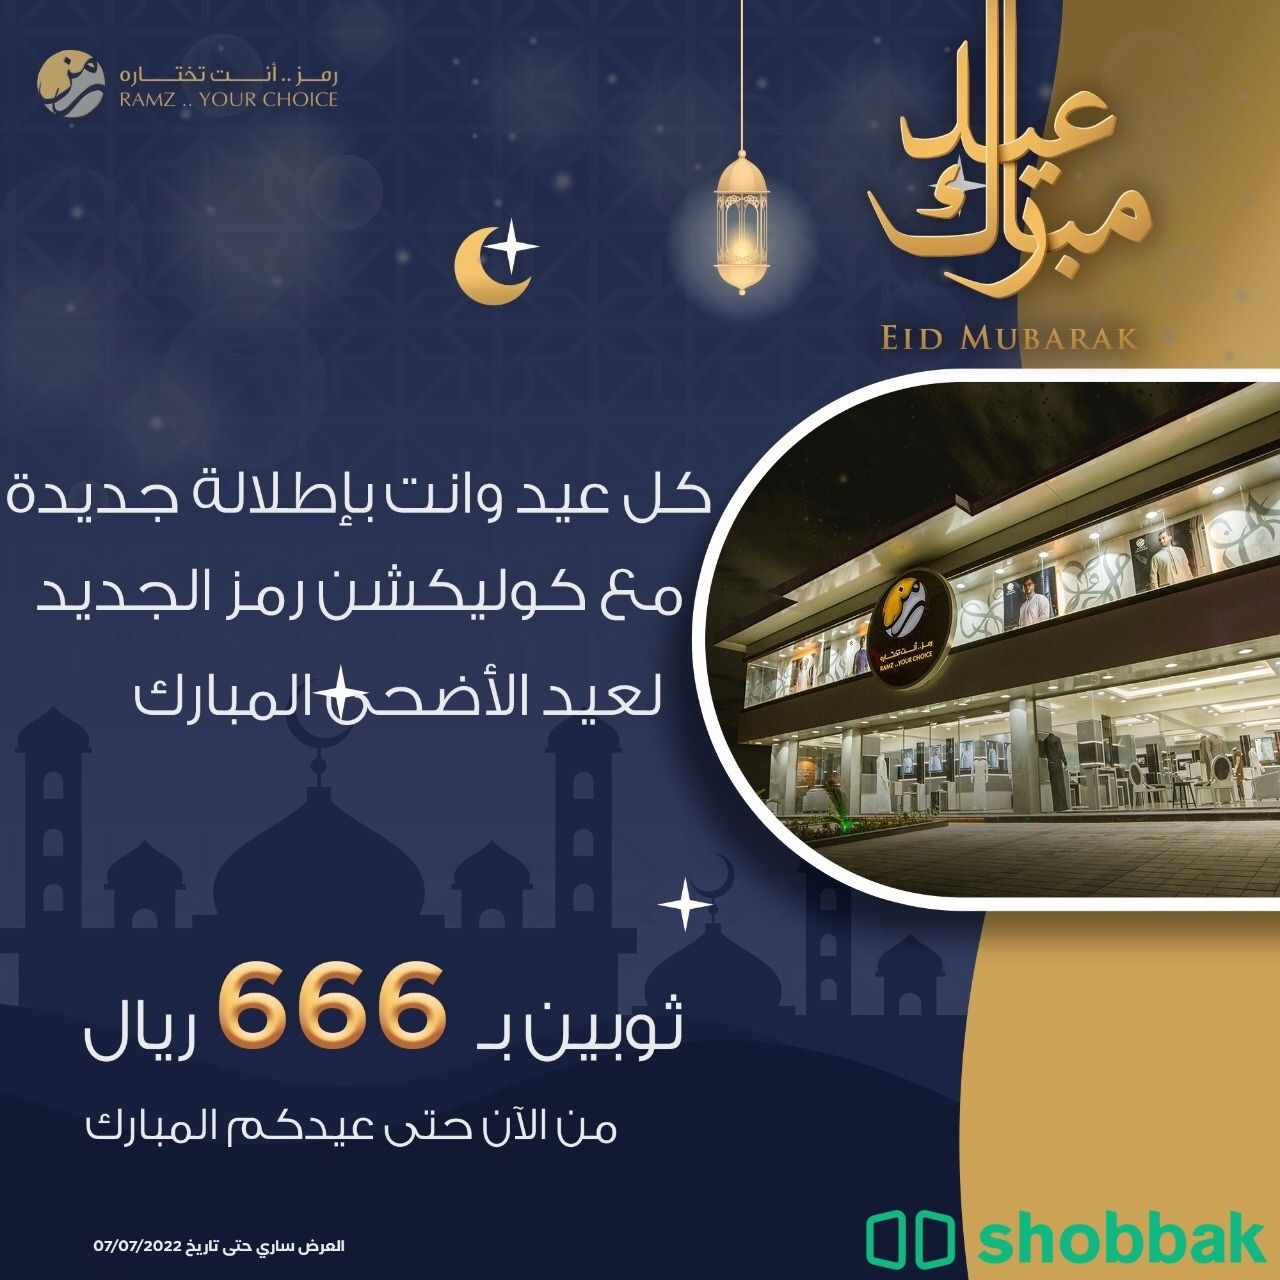 تصميم اعلانات و بوستات سوشل ميديا Shobbak Saudi Arabia